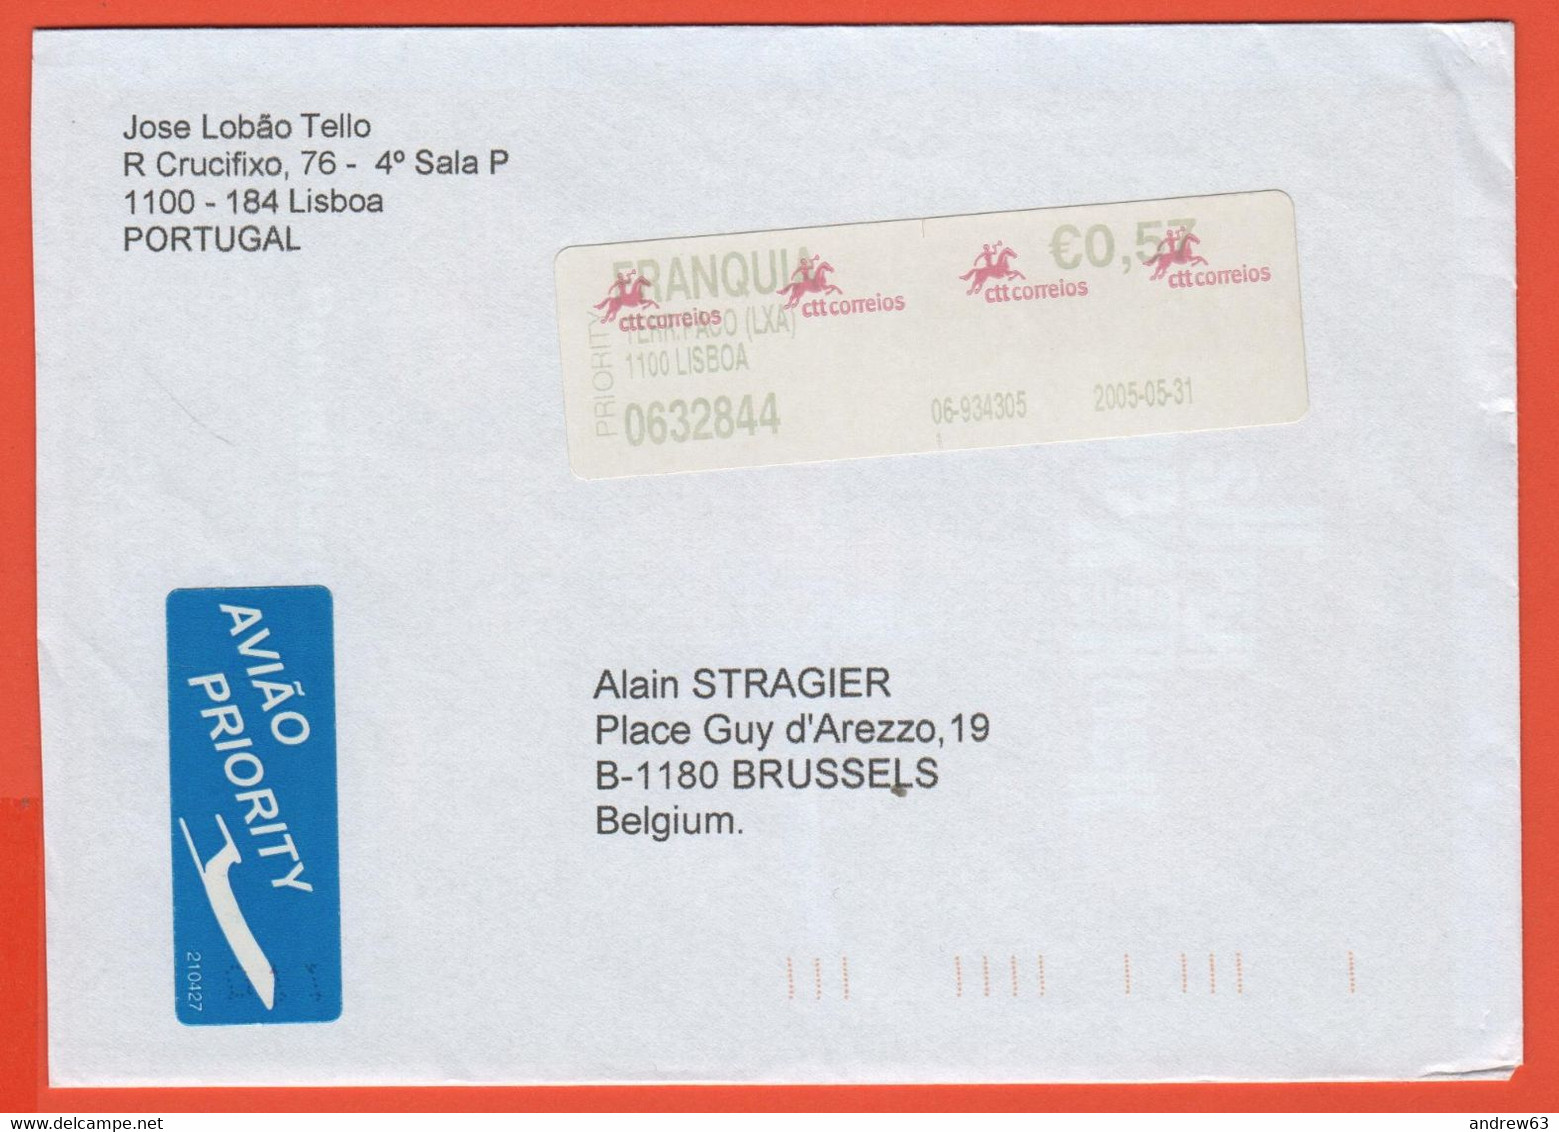 PORTOGALLO - PORTUGAL - 2005 - 0,57€ Postage Paid - Viaggiata Da Lisboa Per Bruxelles, Belgium - Covers & Documents